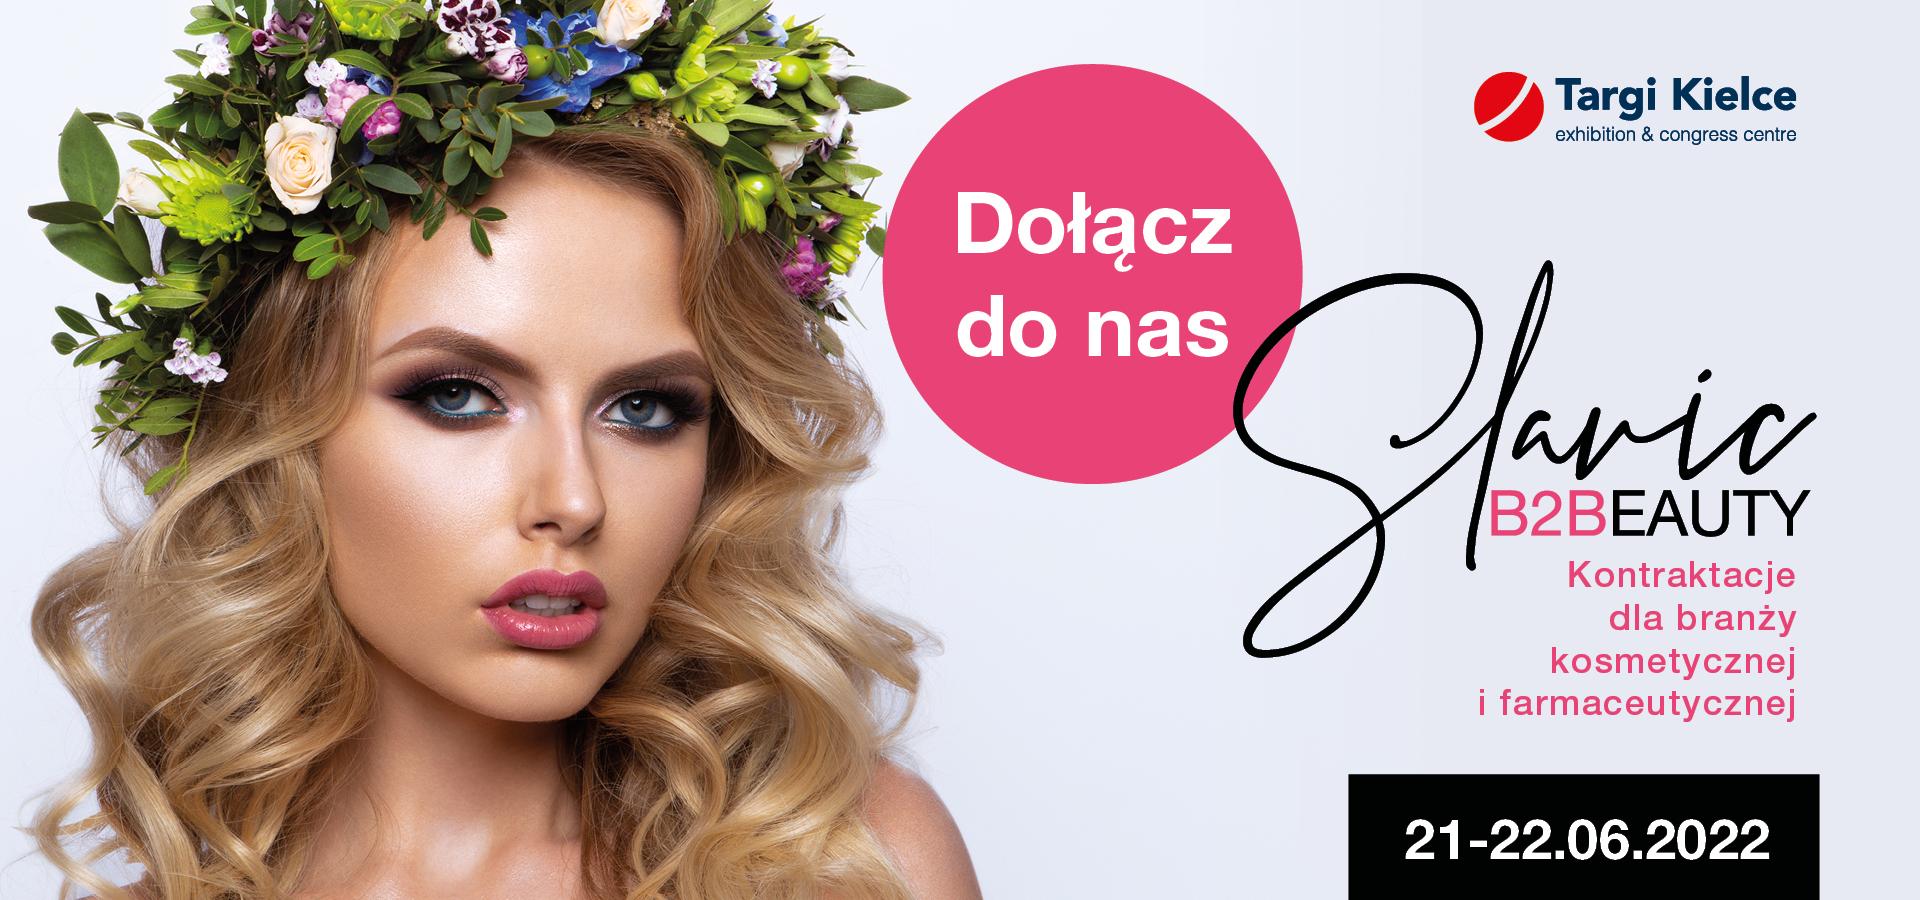 Slavic Beauty - międzynarodowe kontraktacje kosmetyczno-farmaceutyczne w centrum wystawienniczym Targi Kielce